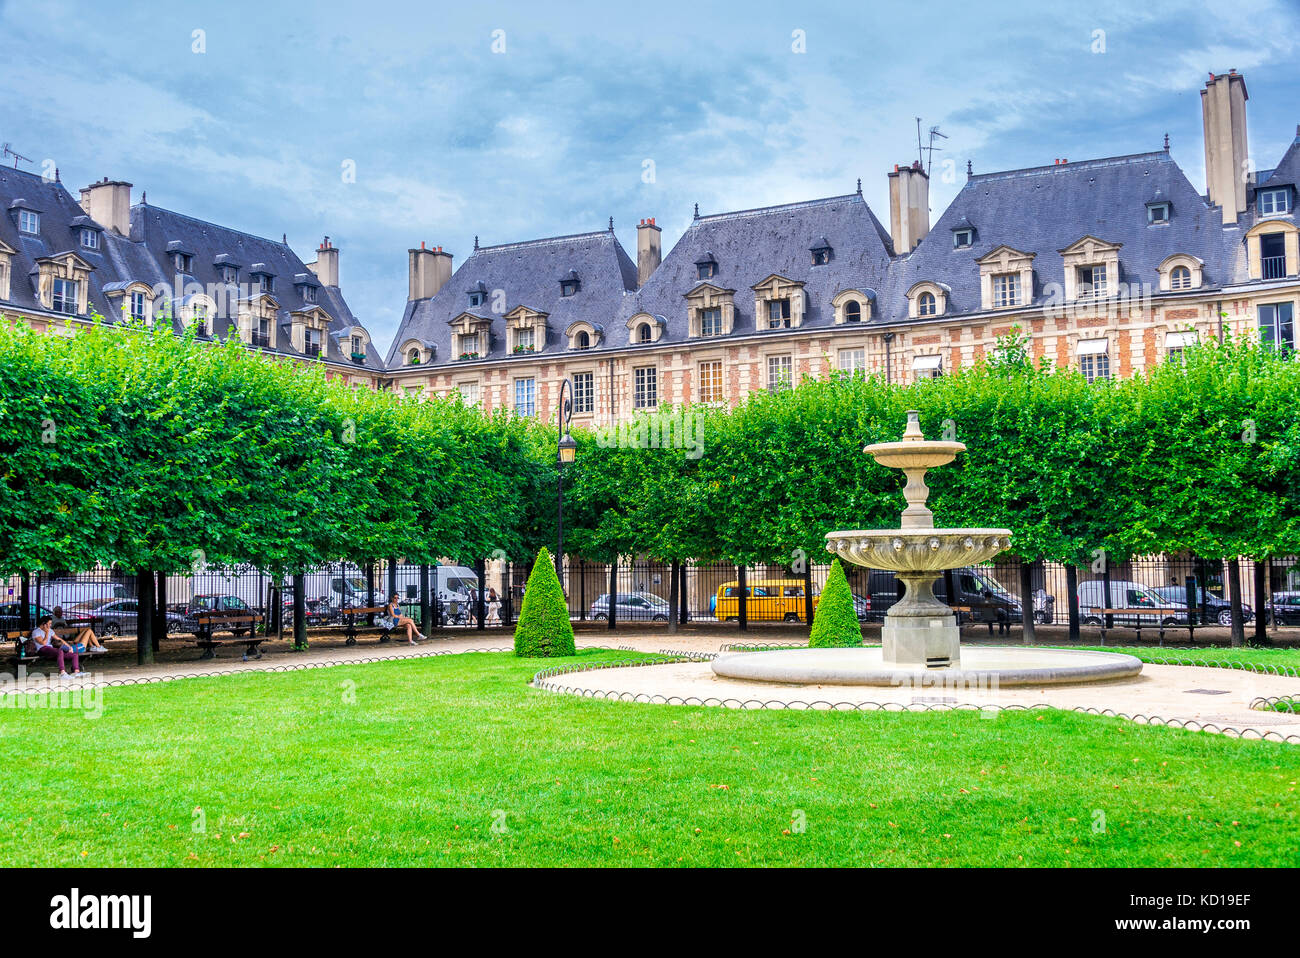 La Place des Voges, Originalmente Place Royale, es la plaza planificada más antigua de París, Francia. Situado en el barrio de Marais es popular entre los lugareños. Foto de stock